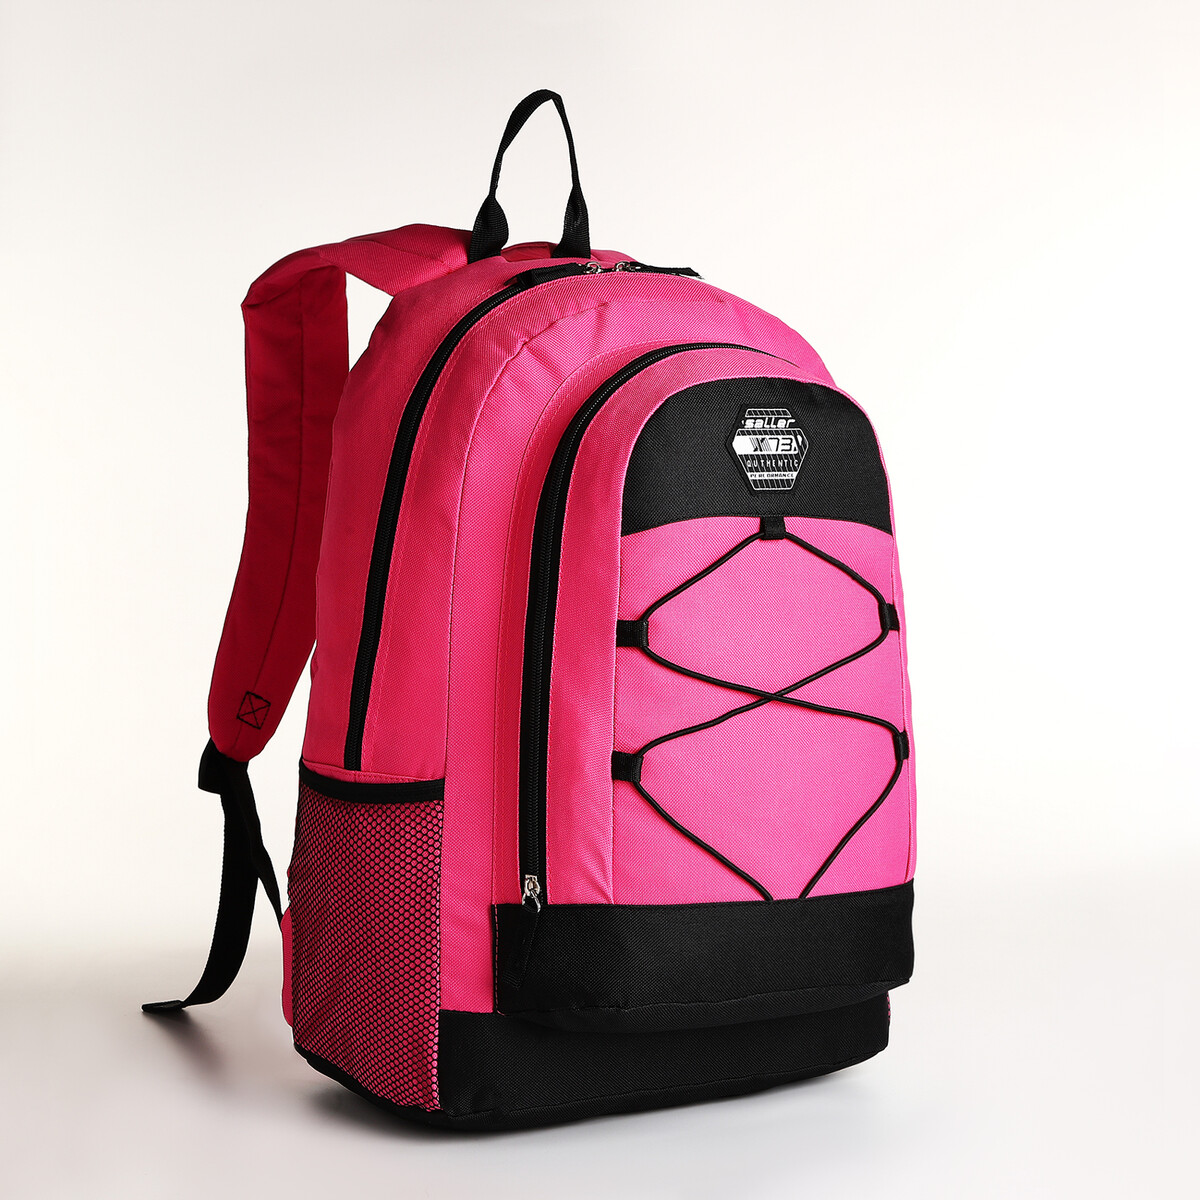 Рюкзак молодежный на молнии, 3 кармана, цвет розовый рюкзак молодежный из текстиля 2 отдела на молниях 3 кармана розовый